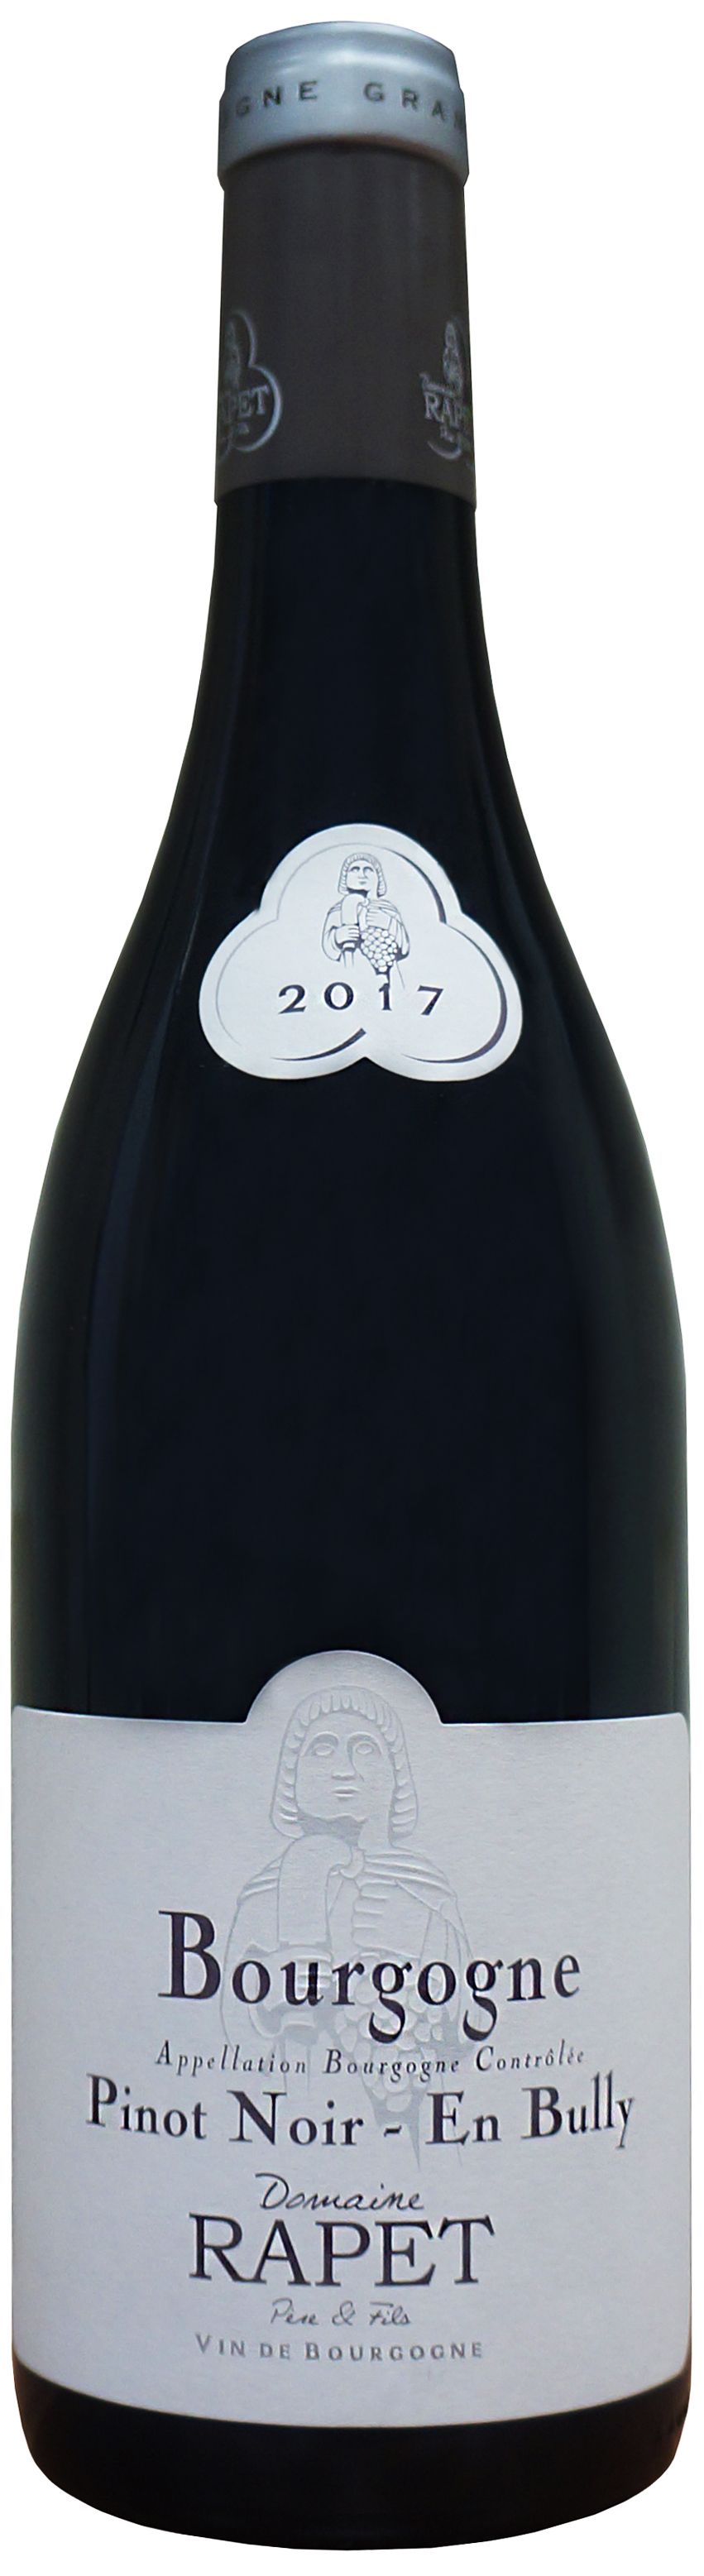 Domaine Rapet, Bourgogne Pinot Noir En Bully, 2017